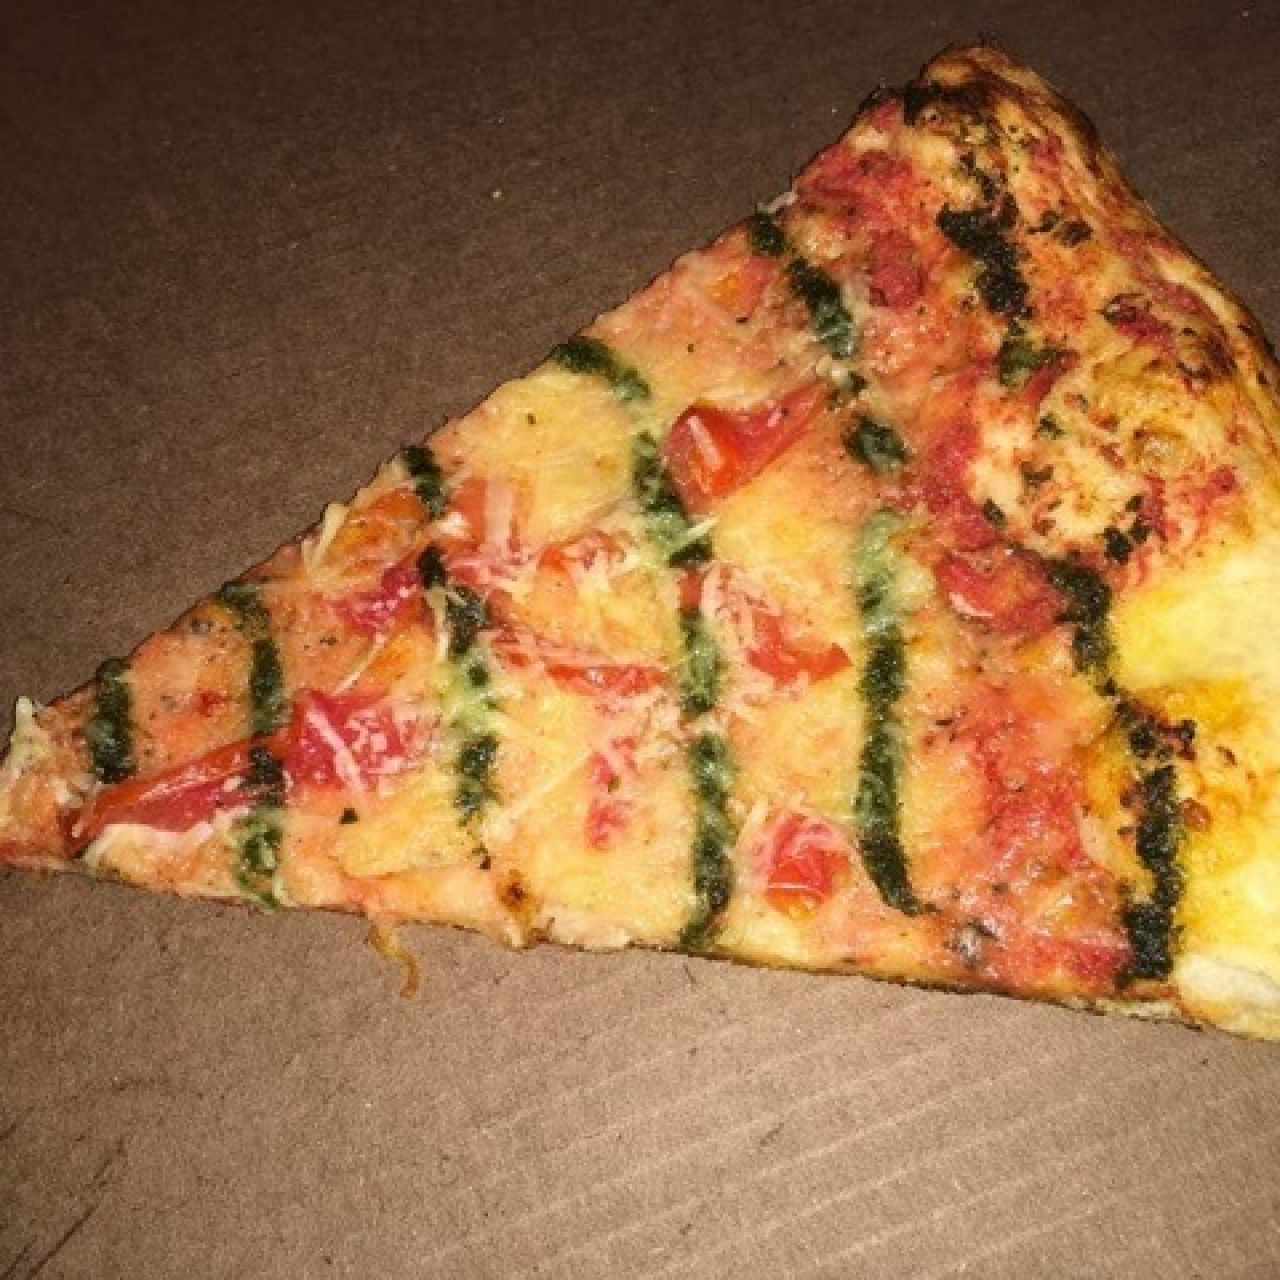 Slice de Pizza Filetto, buena, per demasiado pocos ingredientes